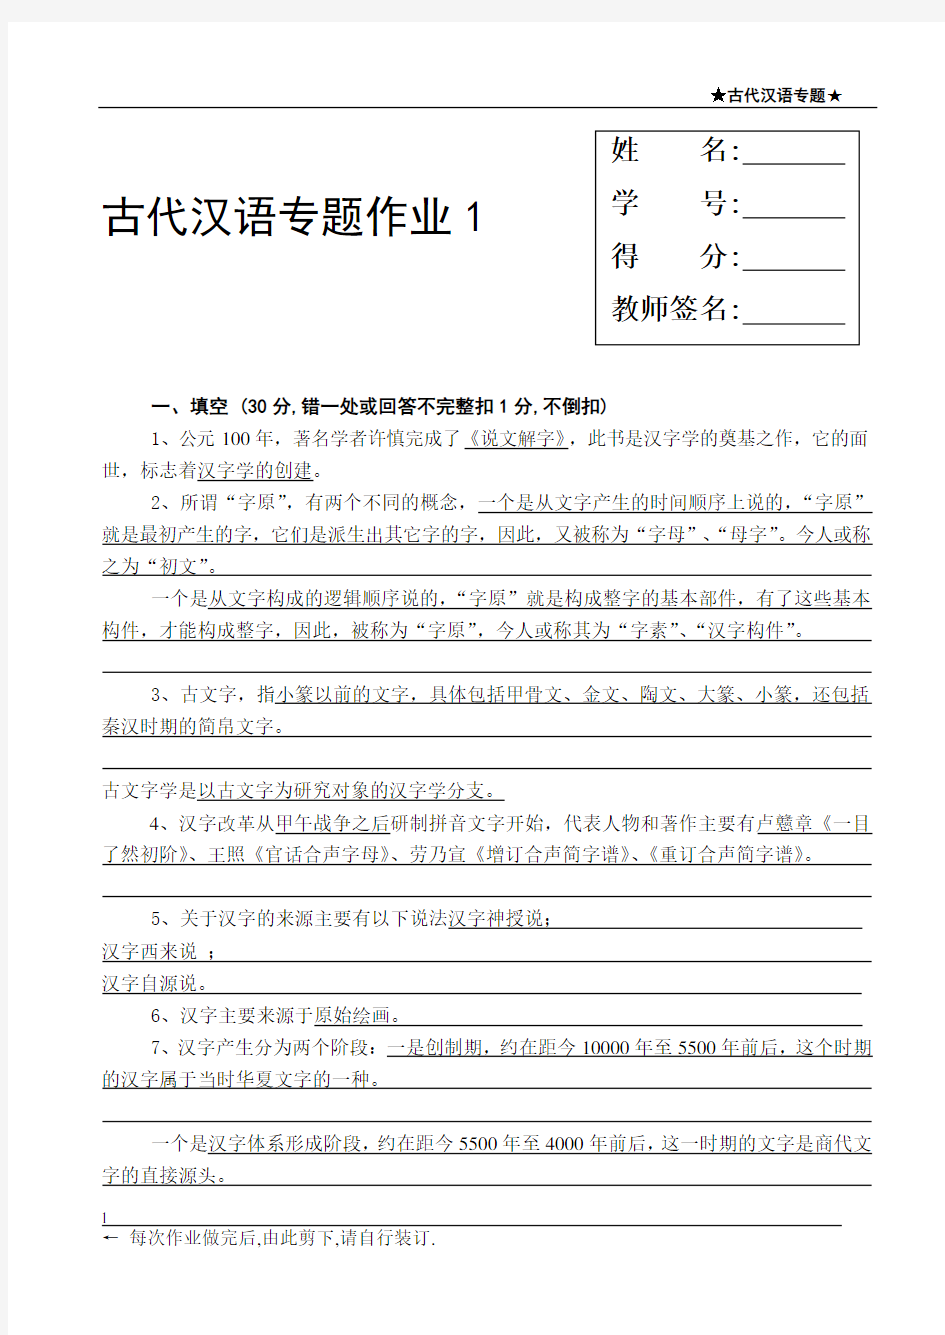 古代汉语专题作业1-4